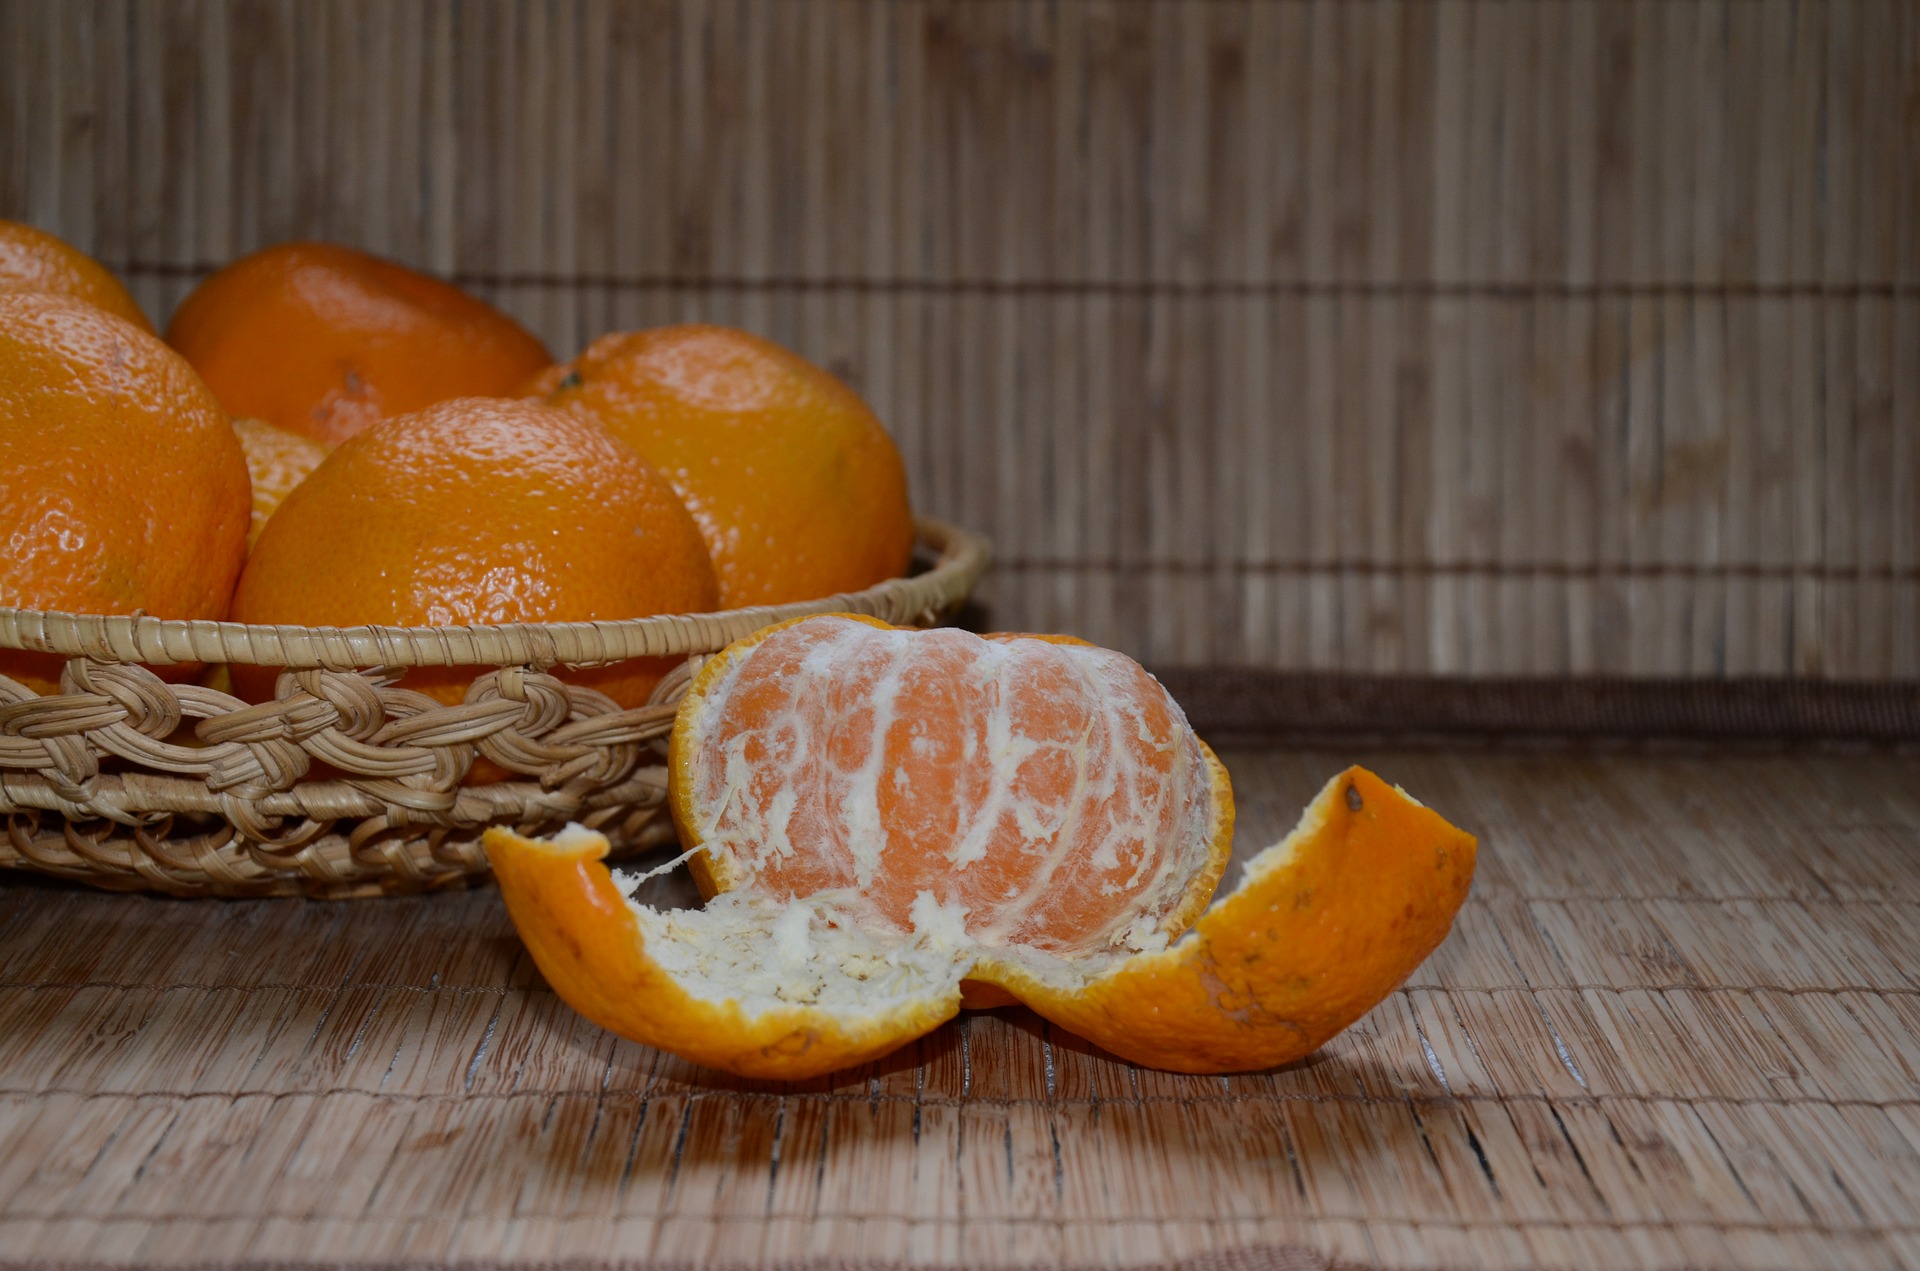 Среди мандаринов. Мандарины Jaffa. Танжерин фрукт. Апельсин, цитрус, кожура, оранжевый. Мандарины Яффо.